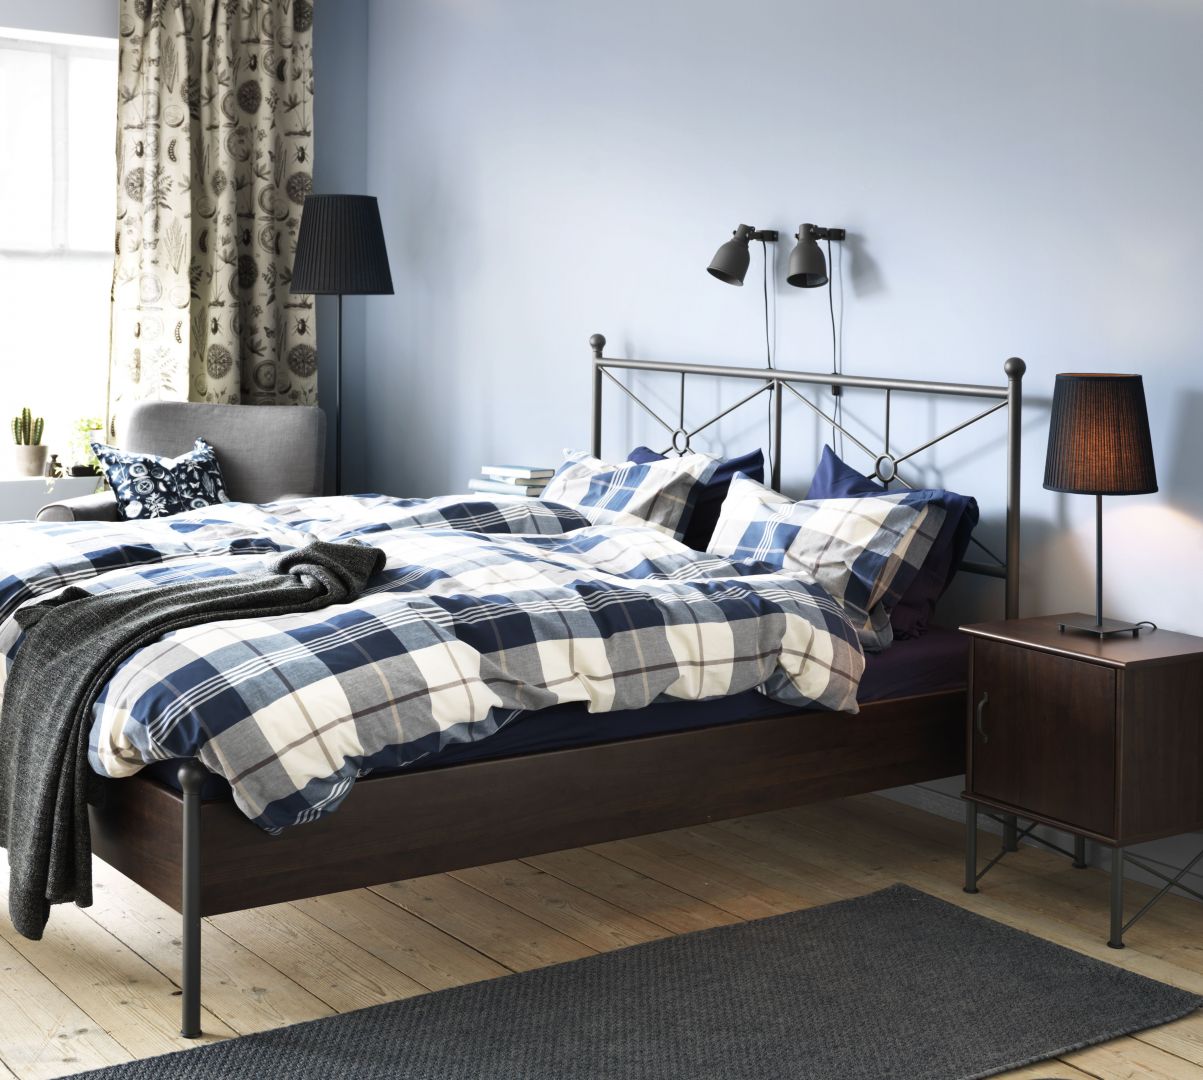 Łóżko Musken marki IKEA. Rama łóżka: wodoodporna płyta wiórowa. Regulowane boki łóżka pozwalają na użycie materacy o różnej grubości.
Fot. IKEA